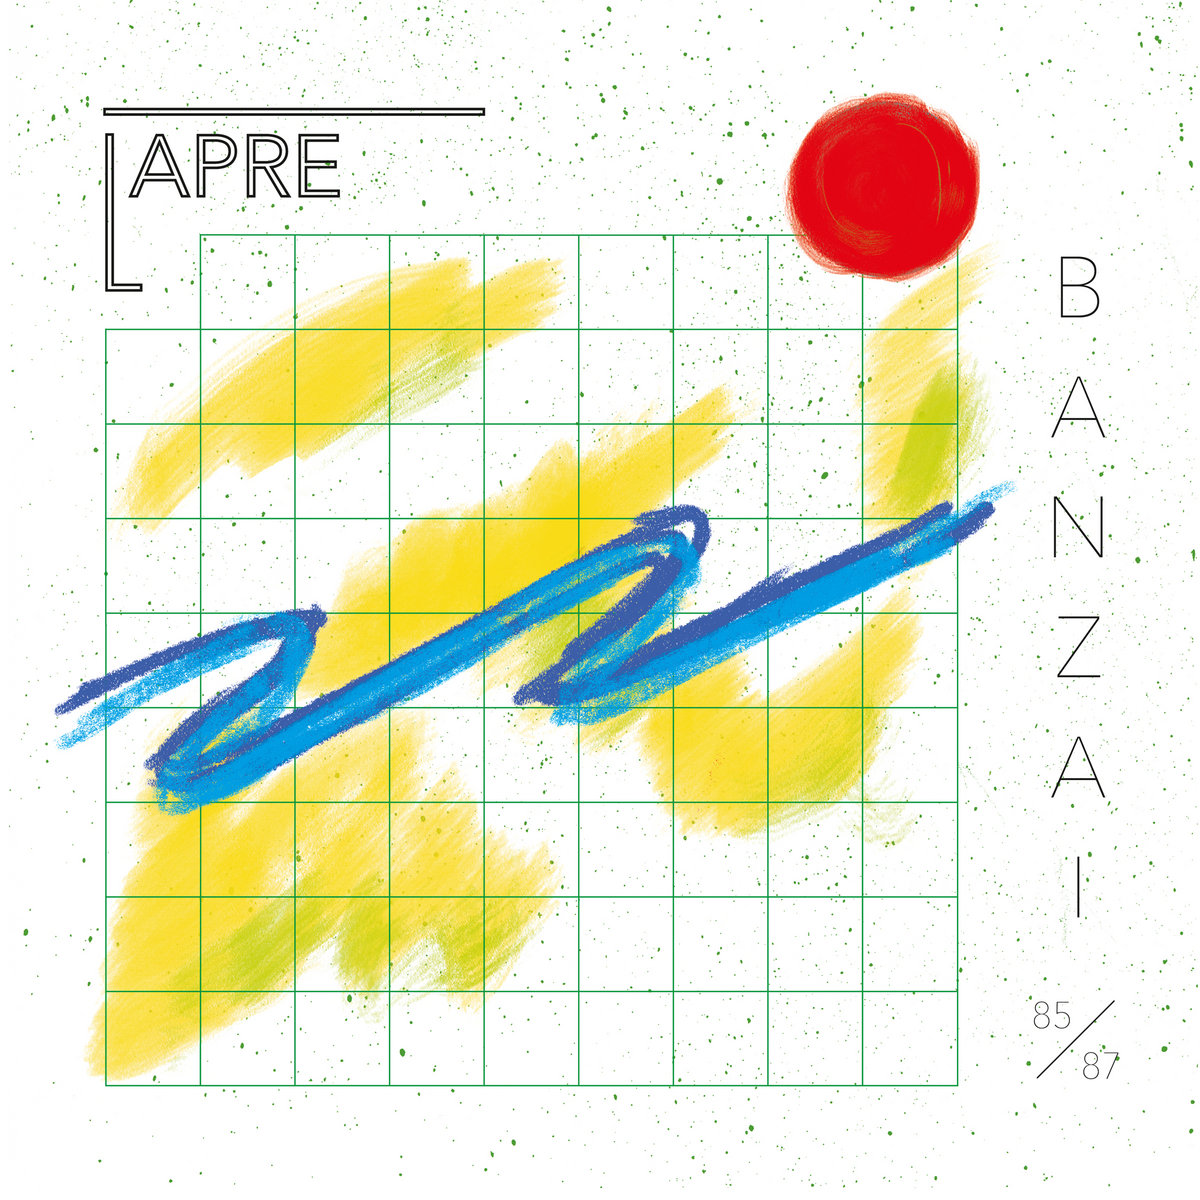 Lapre – Banzai (Elektronische Musik aus Berlin 1985 – 87)